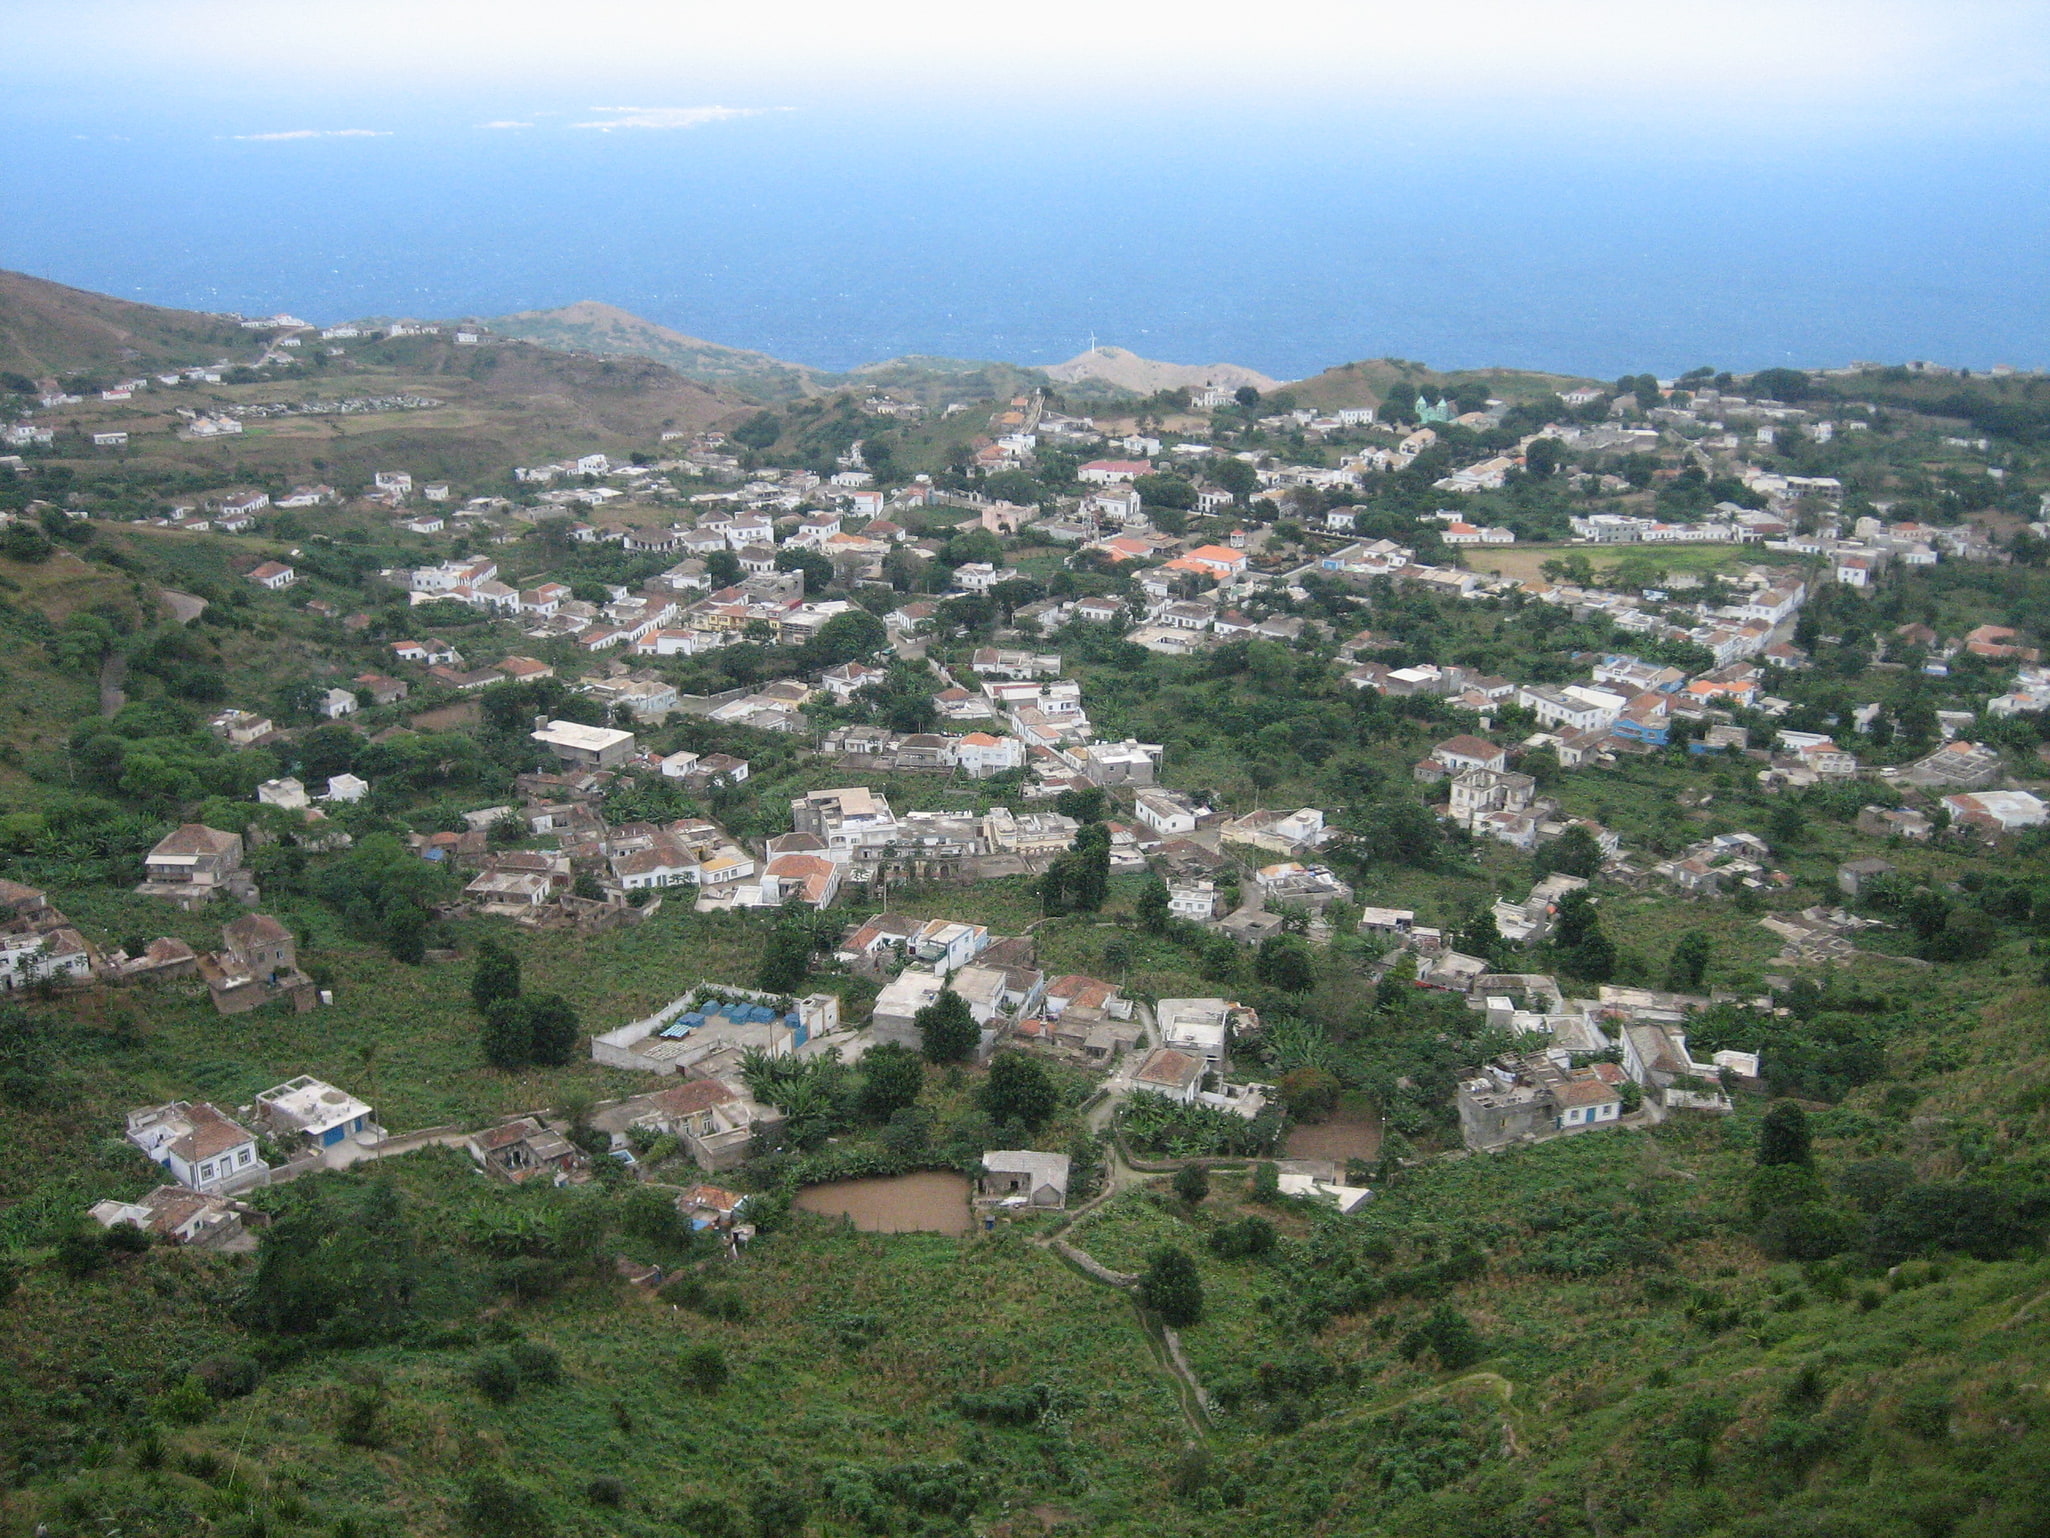 Nova Sintra, Cape Verde